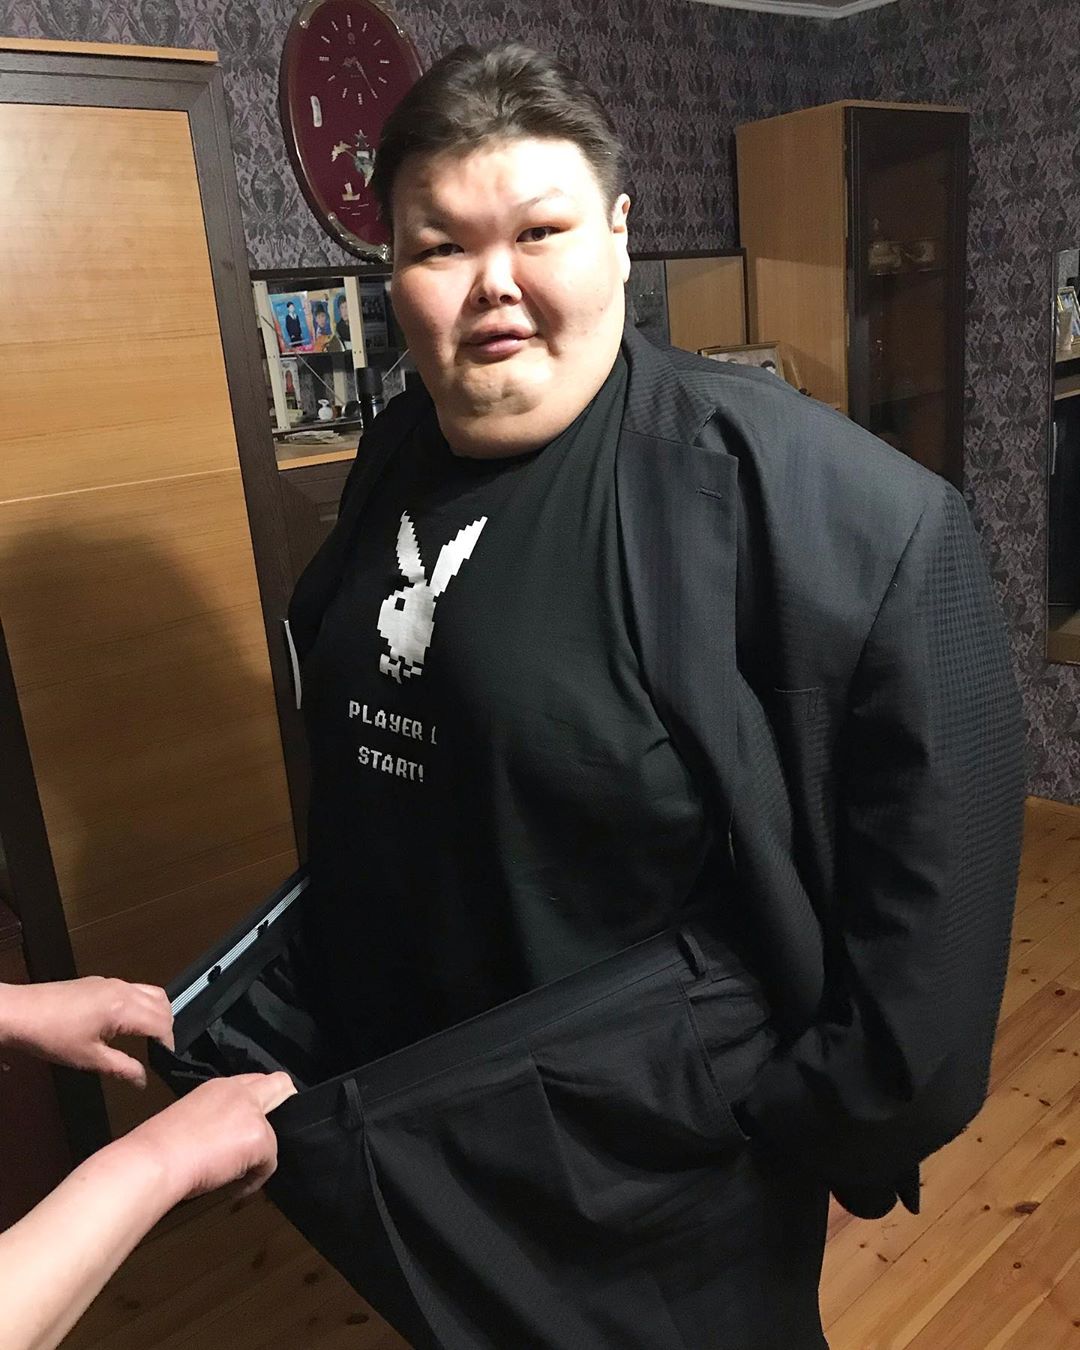 300-килограммовый сумоист Анатолий Михаханов закончил свою карьеру и похудел на 112 кг